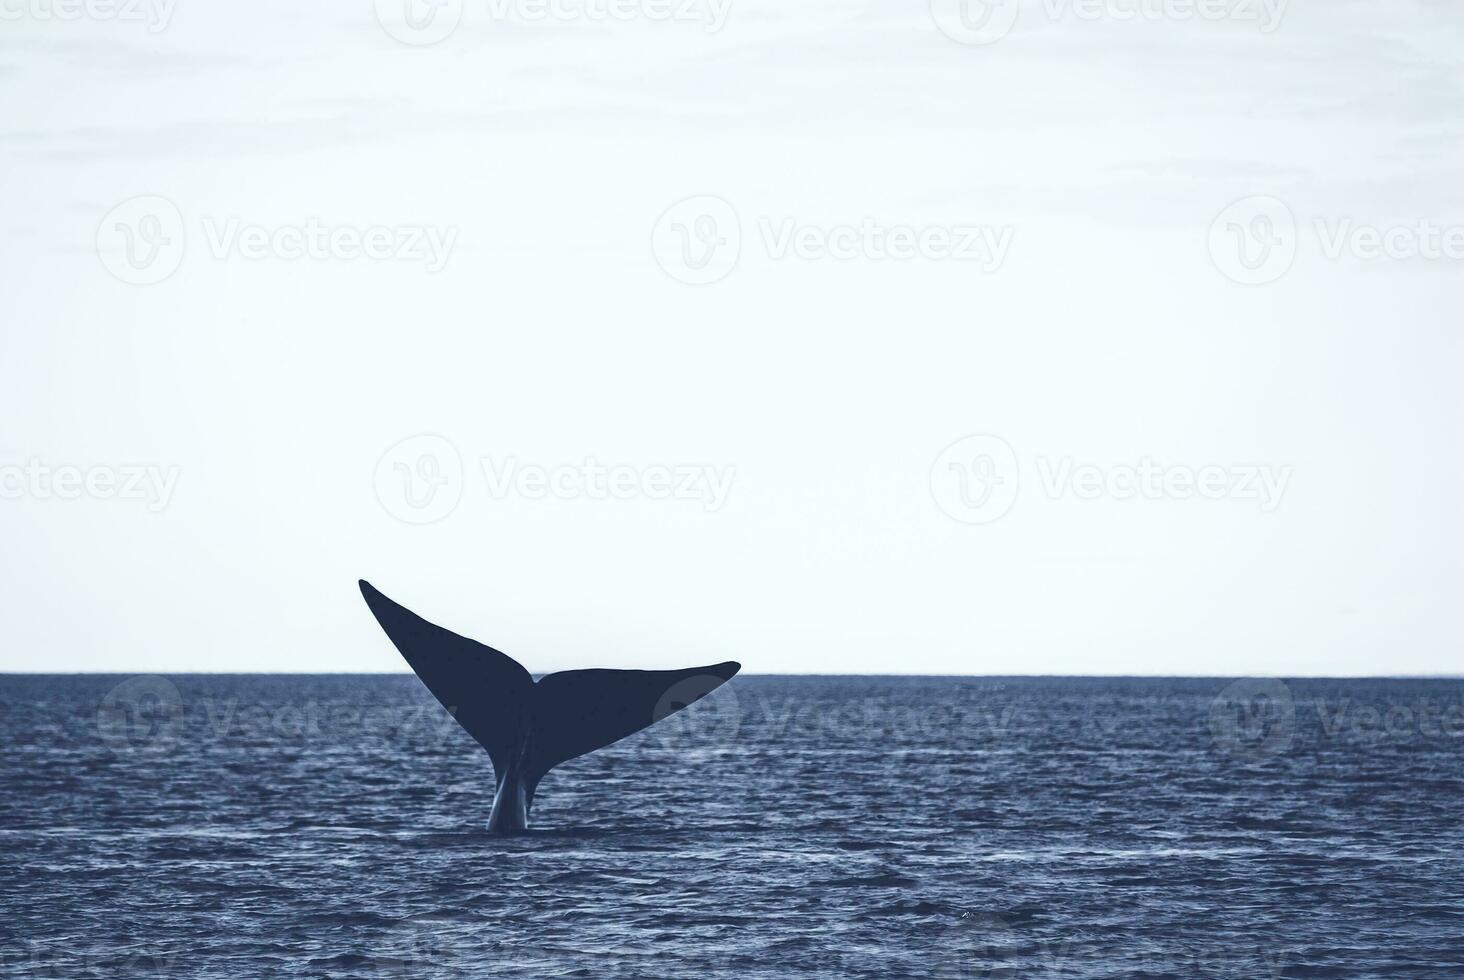 sohutern certo baleia cauda, ameaçadas de extinção espécies, Patagônia, Argentina foto